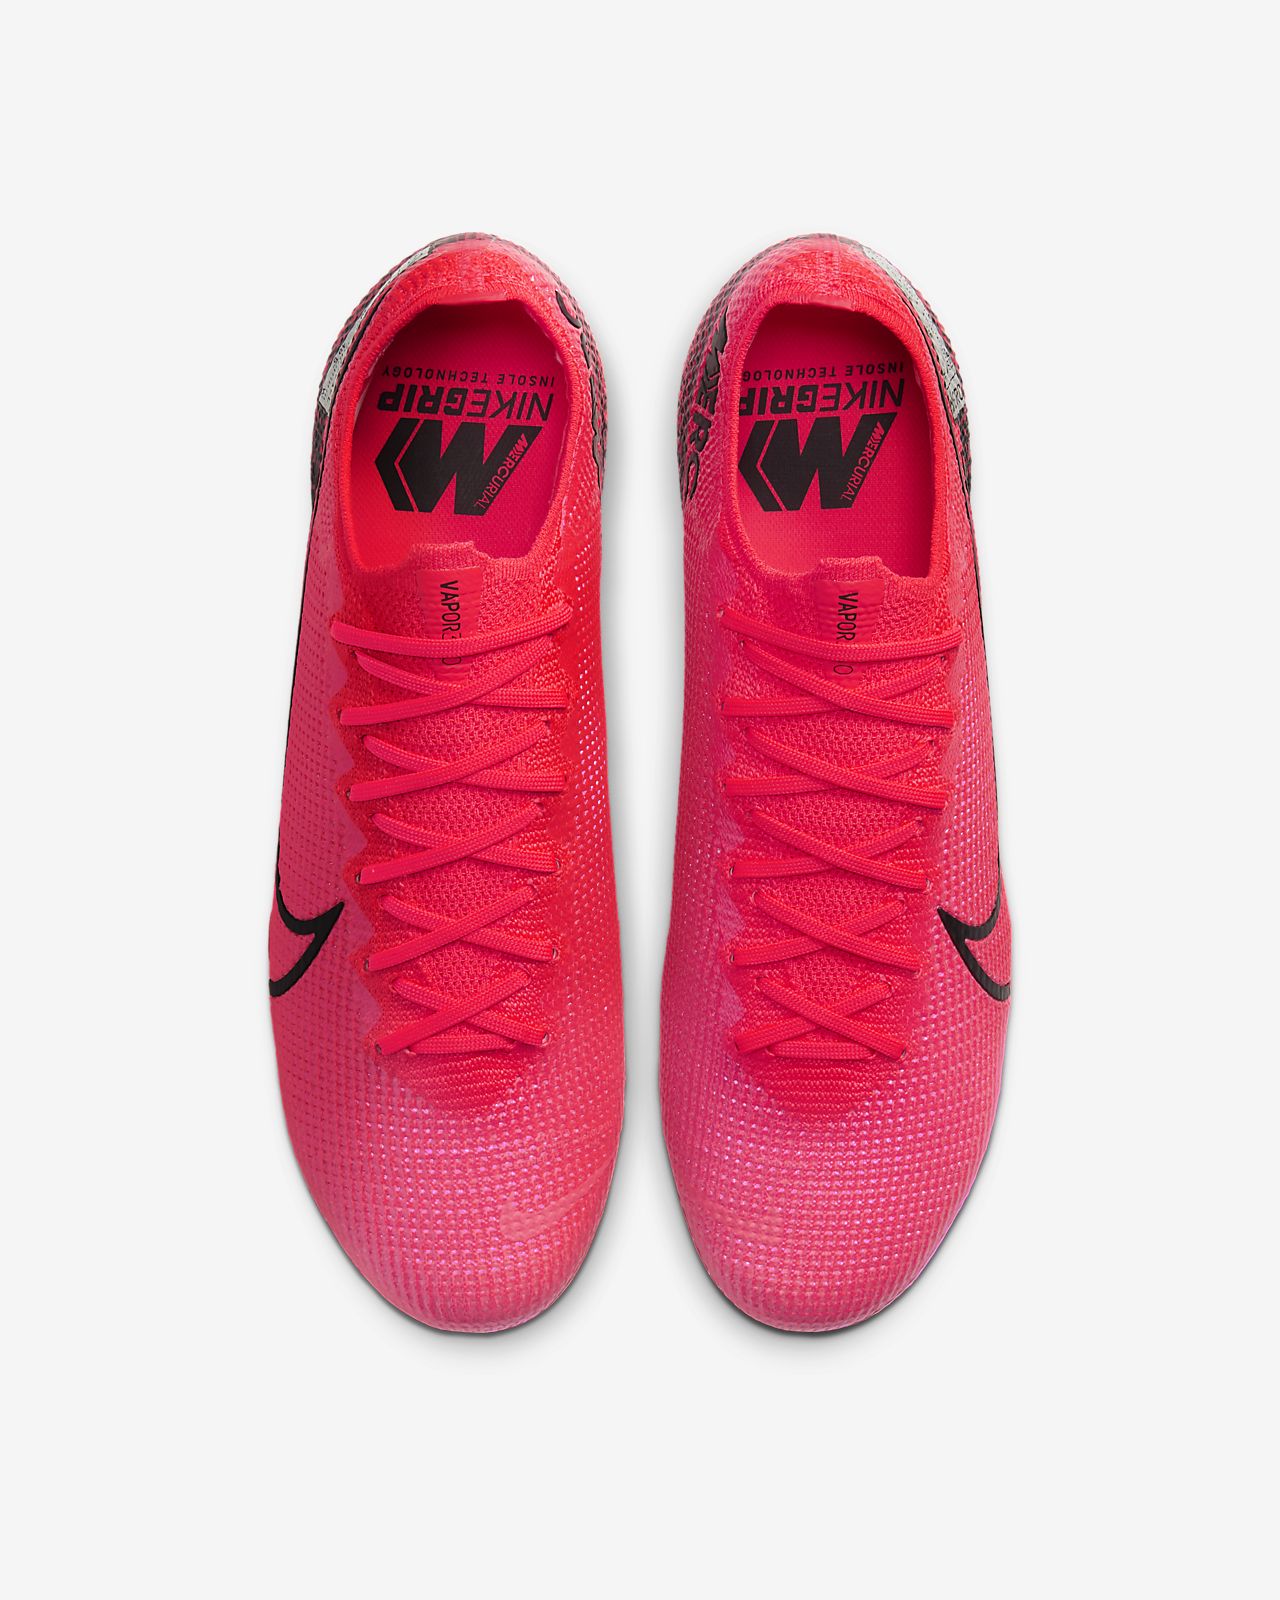 Nike Mercurial Vapor 13 Pro FG Soccer Cleat Shoes Blue.